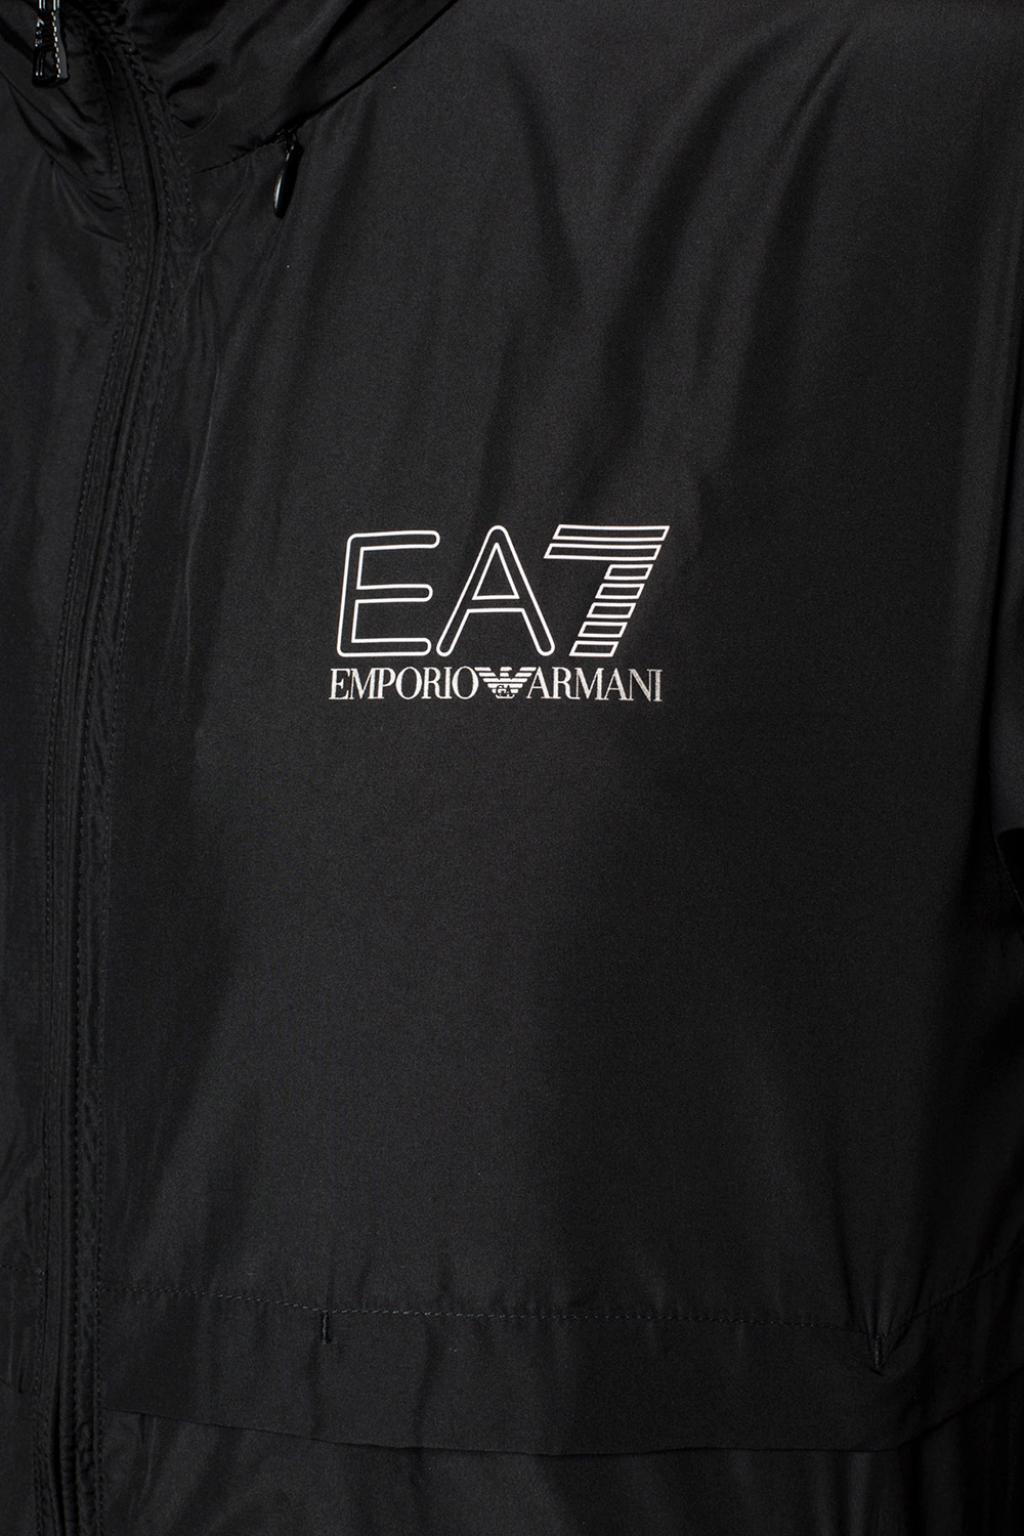 ea7 raincoat